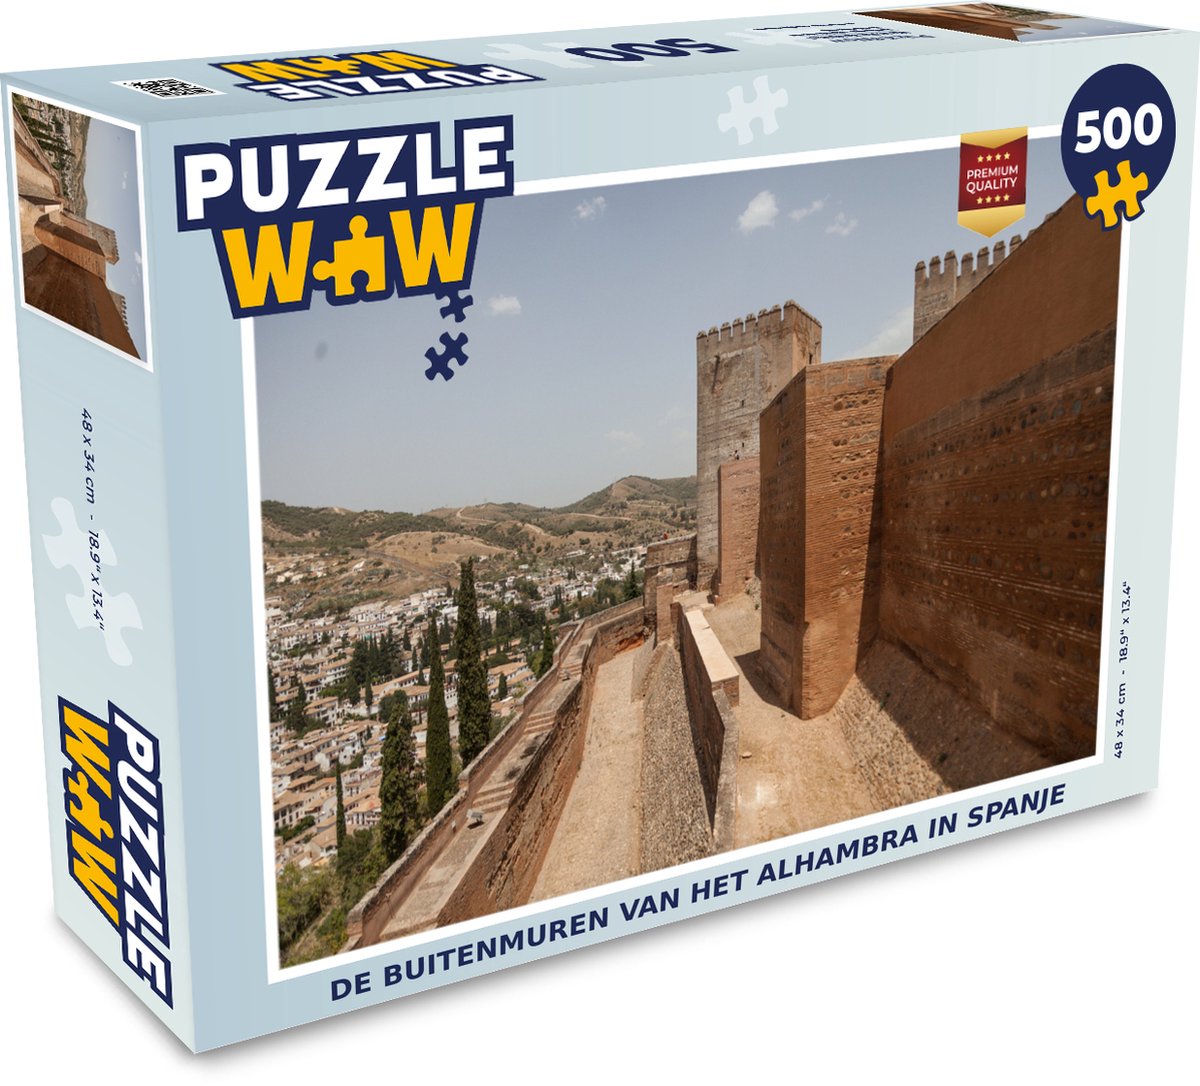 Puzzel De buitenmuren van het Alhambra in Spanje - Legpuzzel - Puzzel 500 stukjes - PuzzleWow